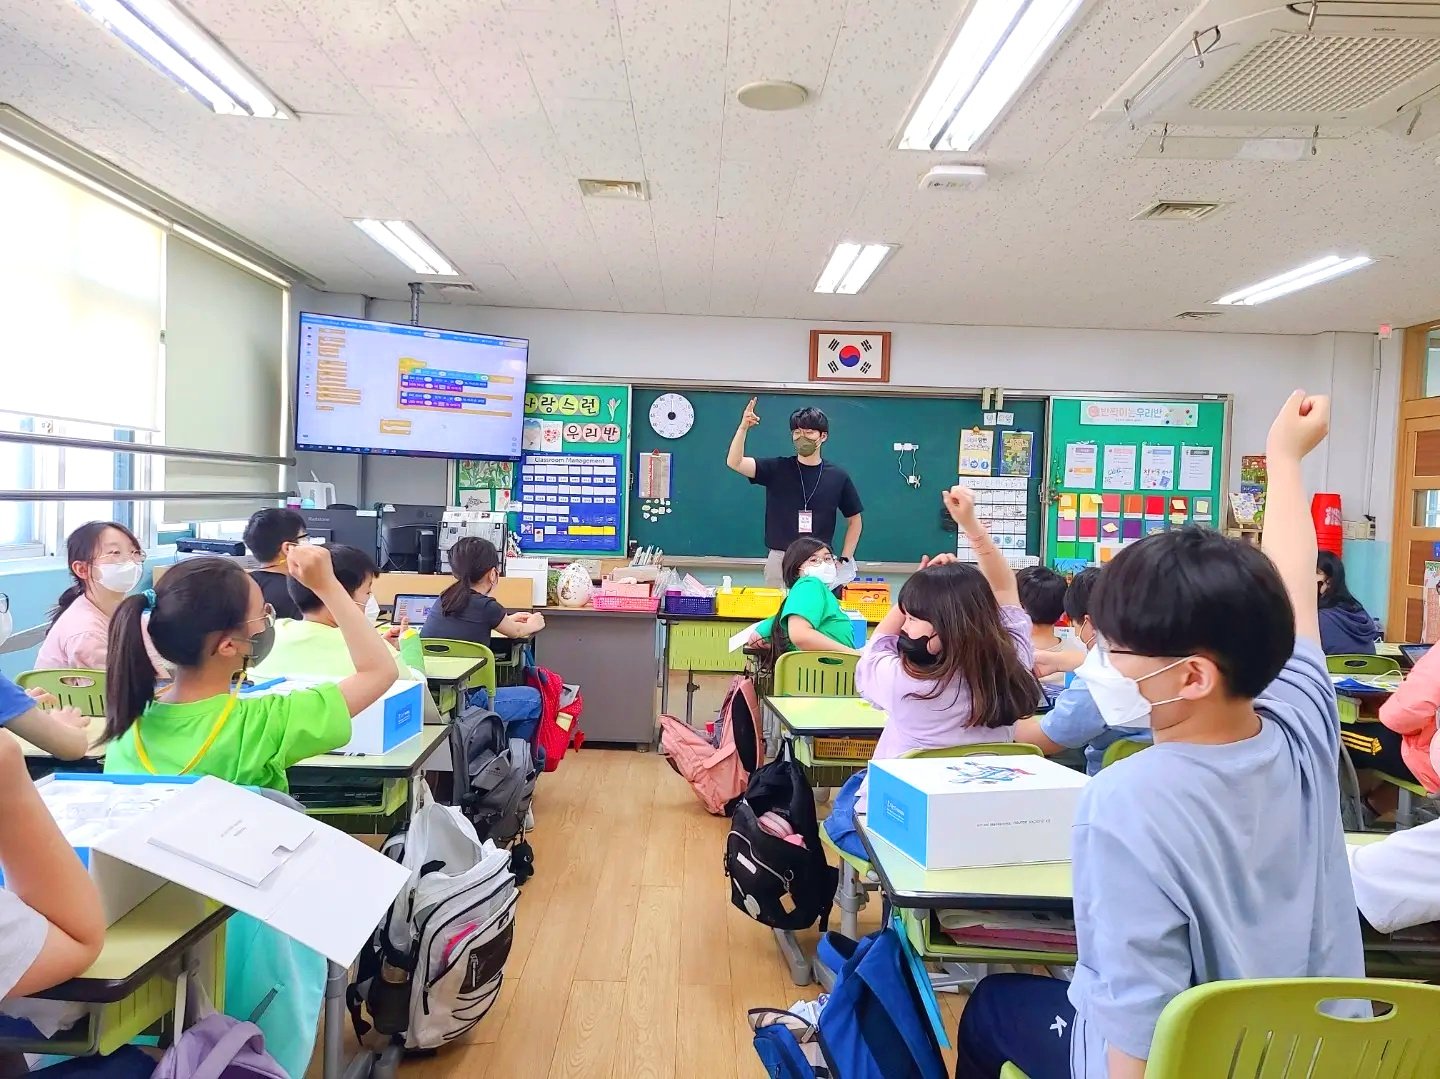 서울 미래초등학교 렌쥴리에듀테인먼트 인공지능미래교실 신나는 AI교실 스페셜데이